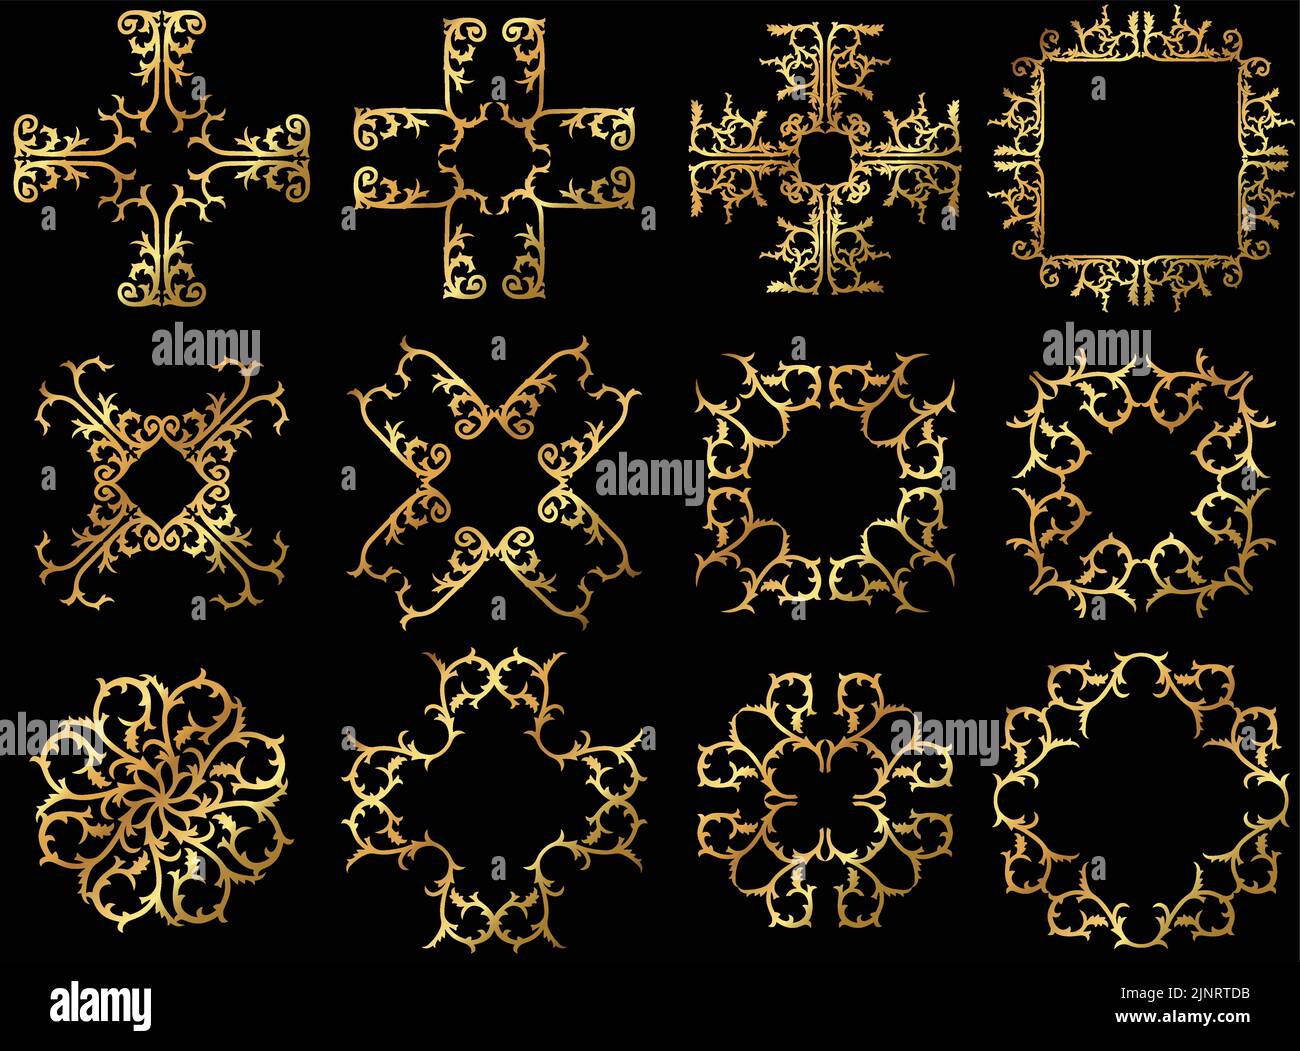 Una serie di bordi e cornici floreali decorativi in oro vettoriale d'epoca. Illustrazione Vettoriale